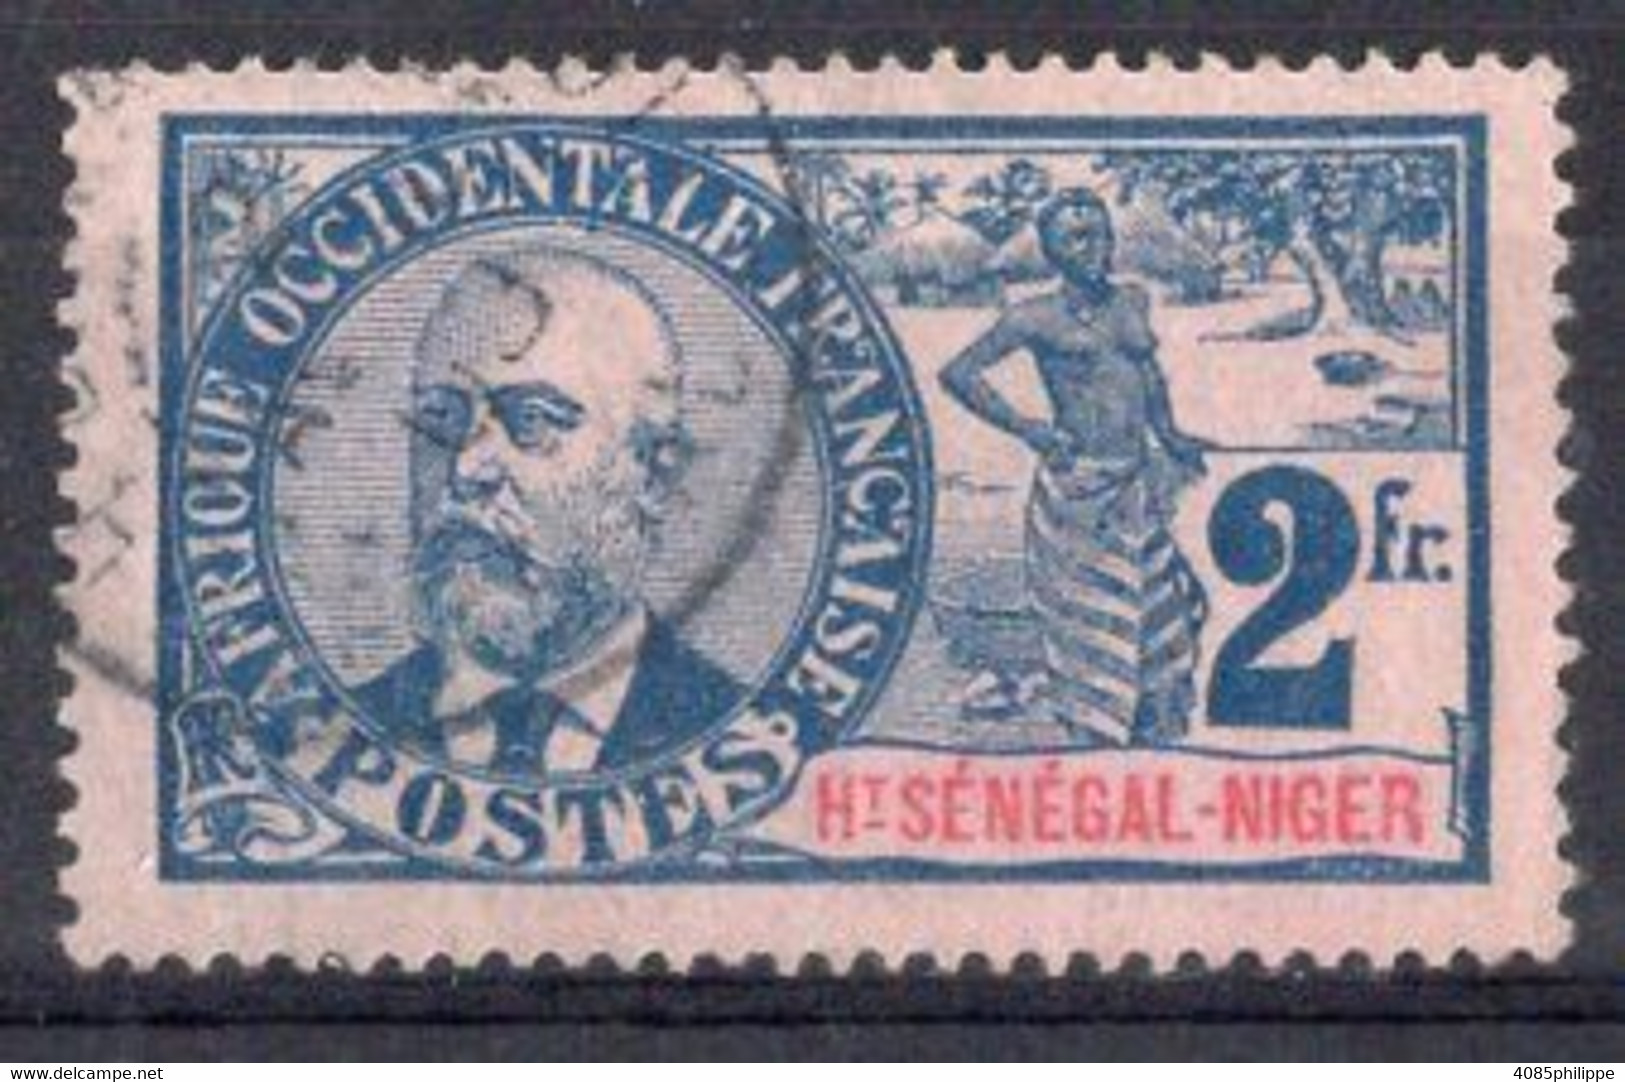 HAUT SENEGAL NIGER Timbre-poste N°16 Oblitéré TB Cote : 72€00 - Used Stamps